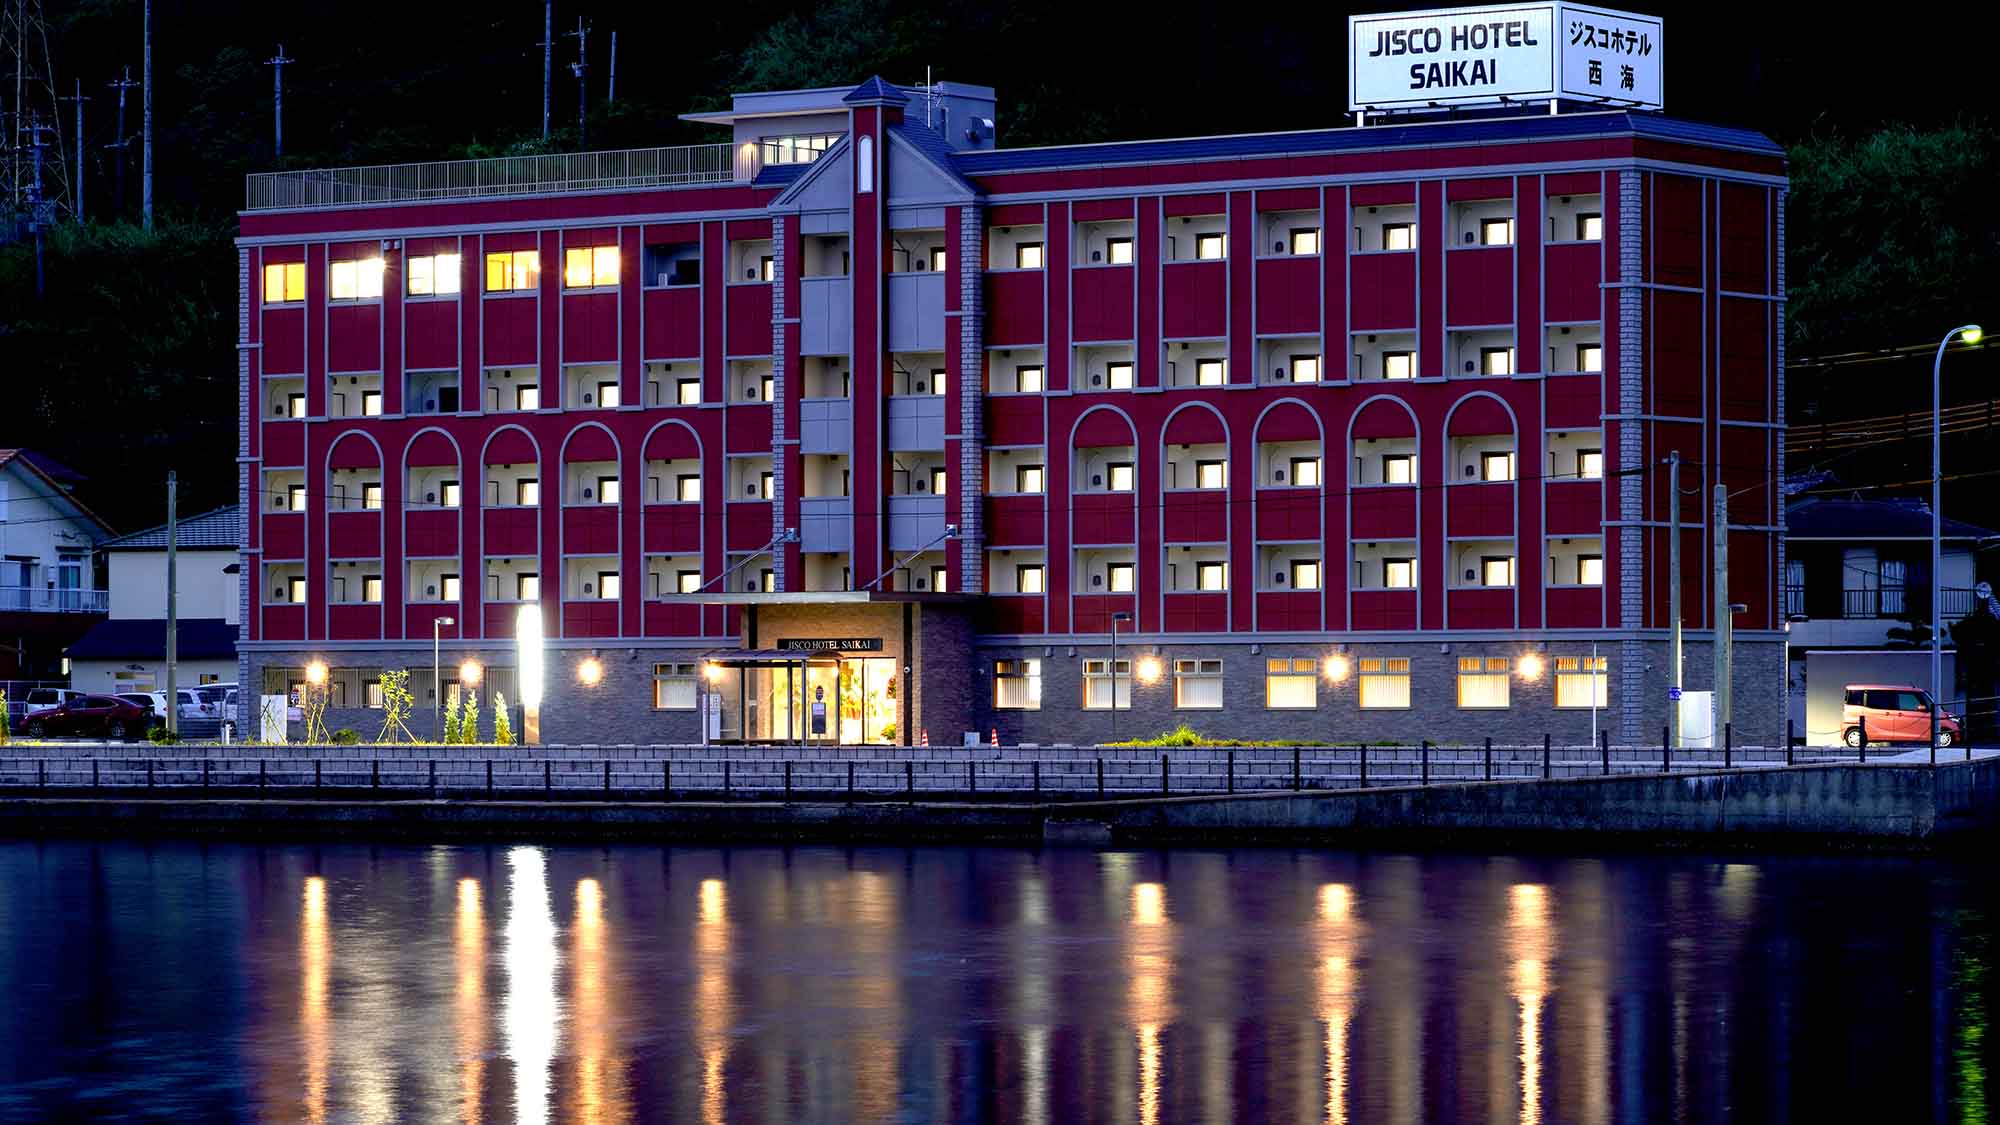 Jisco Hotel Saikai